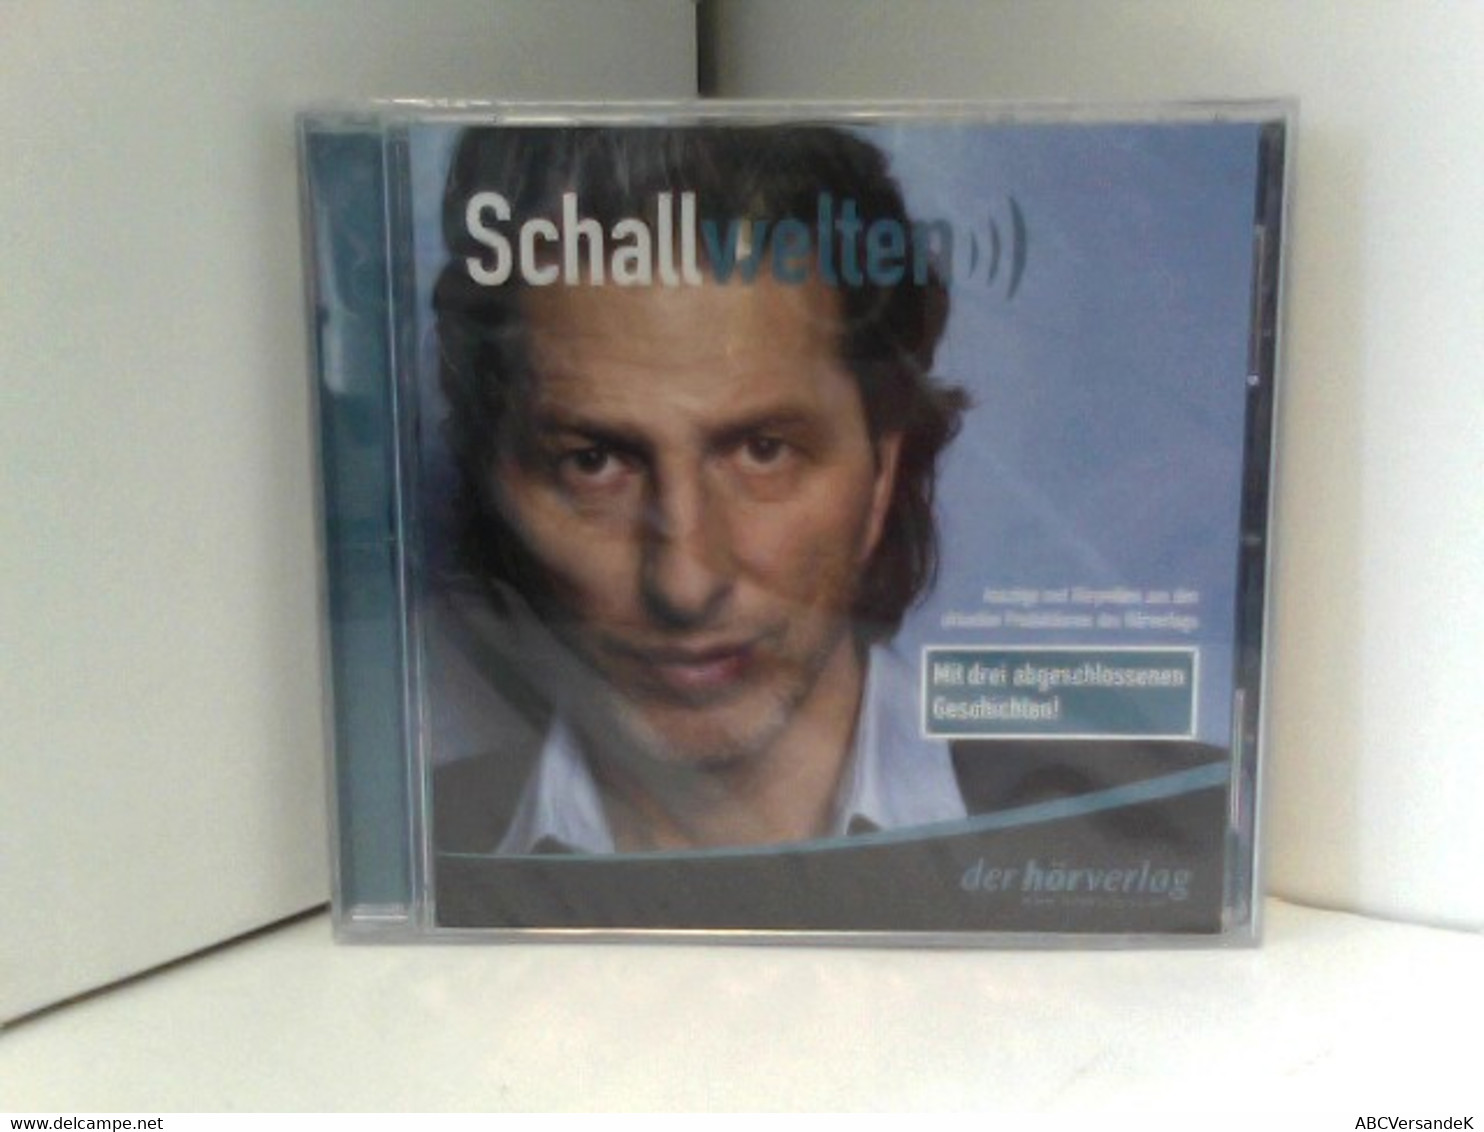 Schallwelten - Auszüge Und Hörproben Aus Den Aktuellen Produktionen Des Hörverlags - Mit Drei Abgeschlossenen - CD